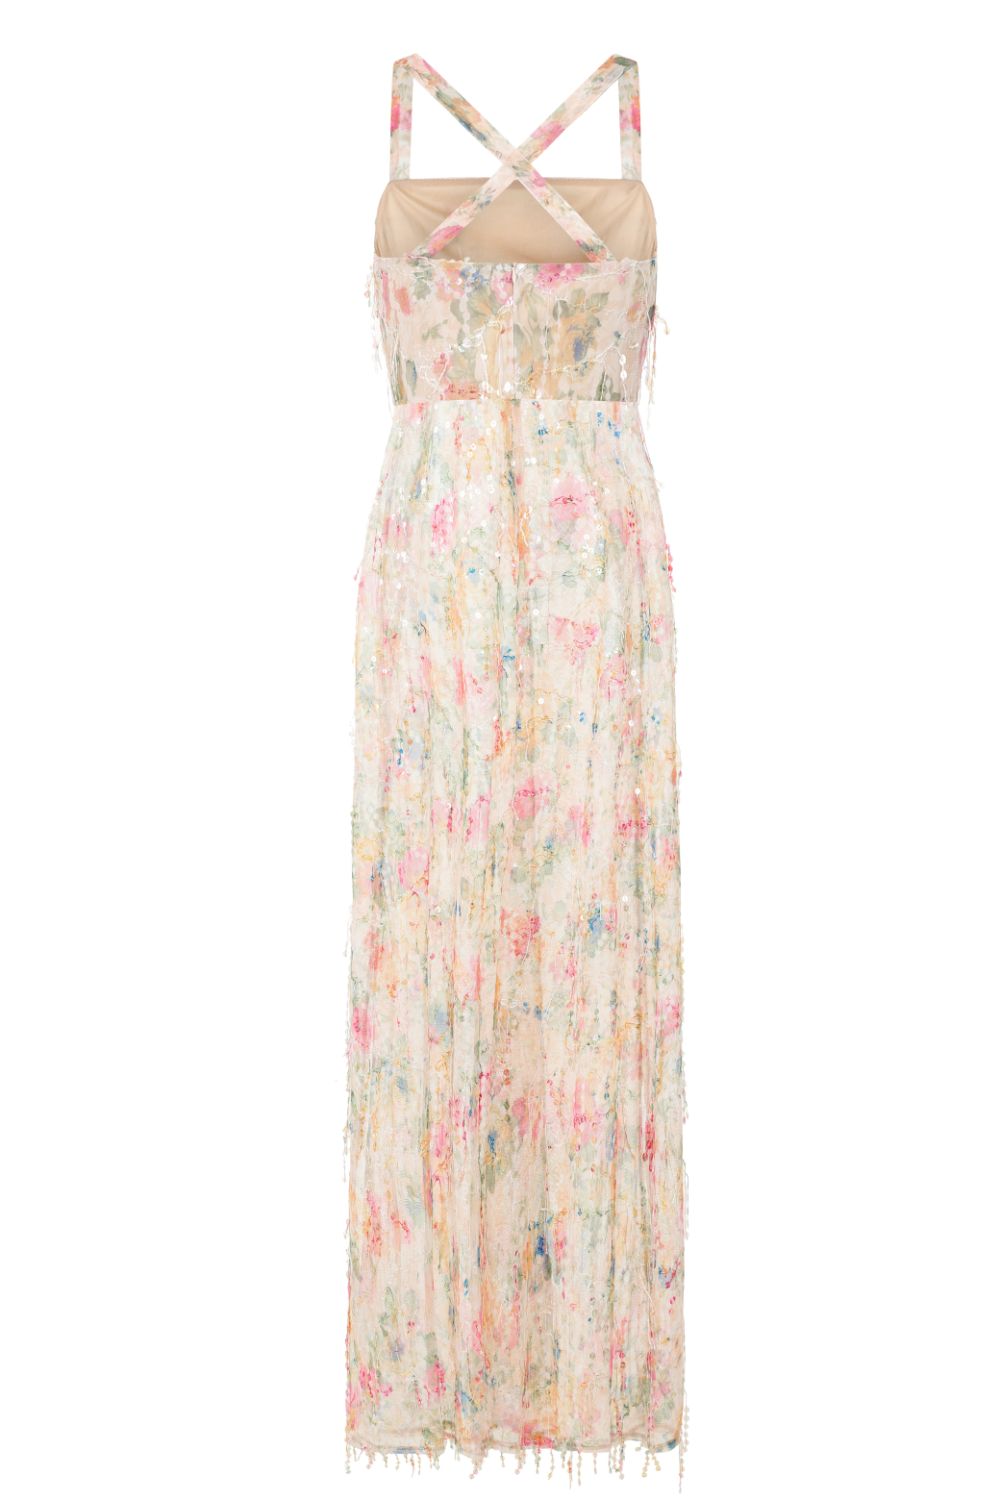 Floral Temptation Sheer Tassel Fringe Sequin Double Slit Maxi Dress